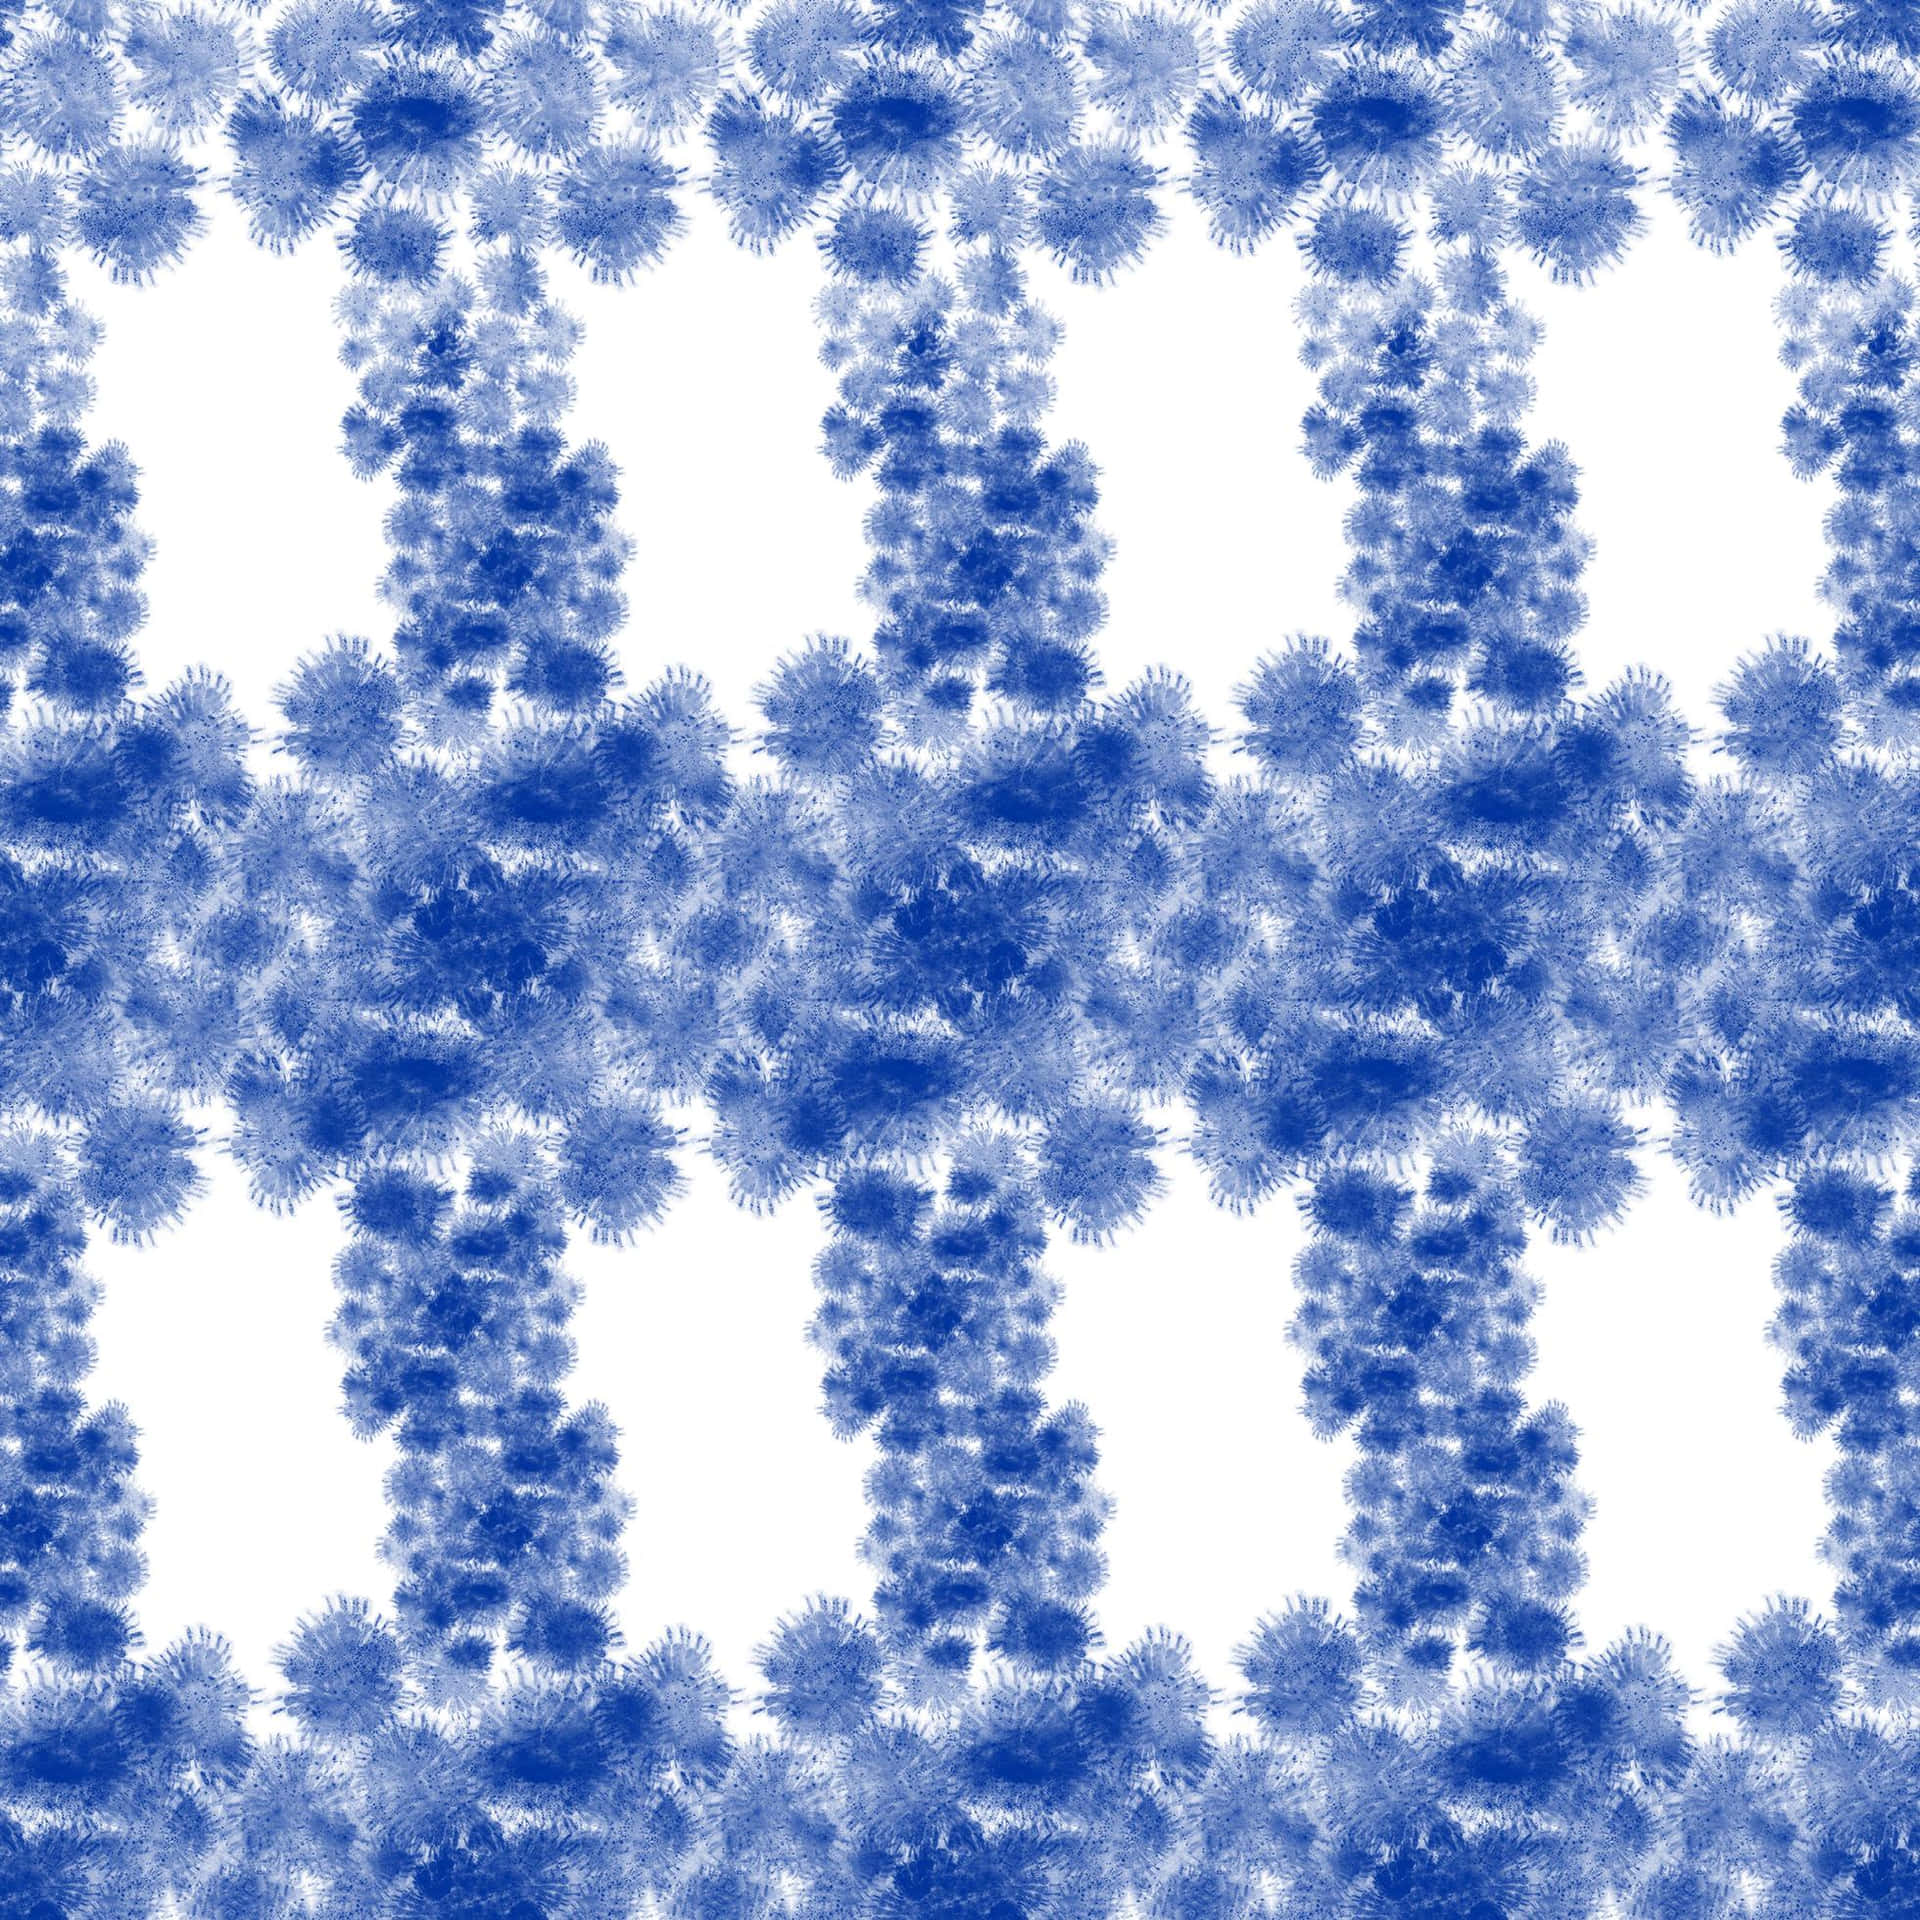 Diseñode Flores En Patrón De Nudo Corbata Azul Y Blanco Fondo de pantalla